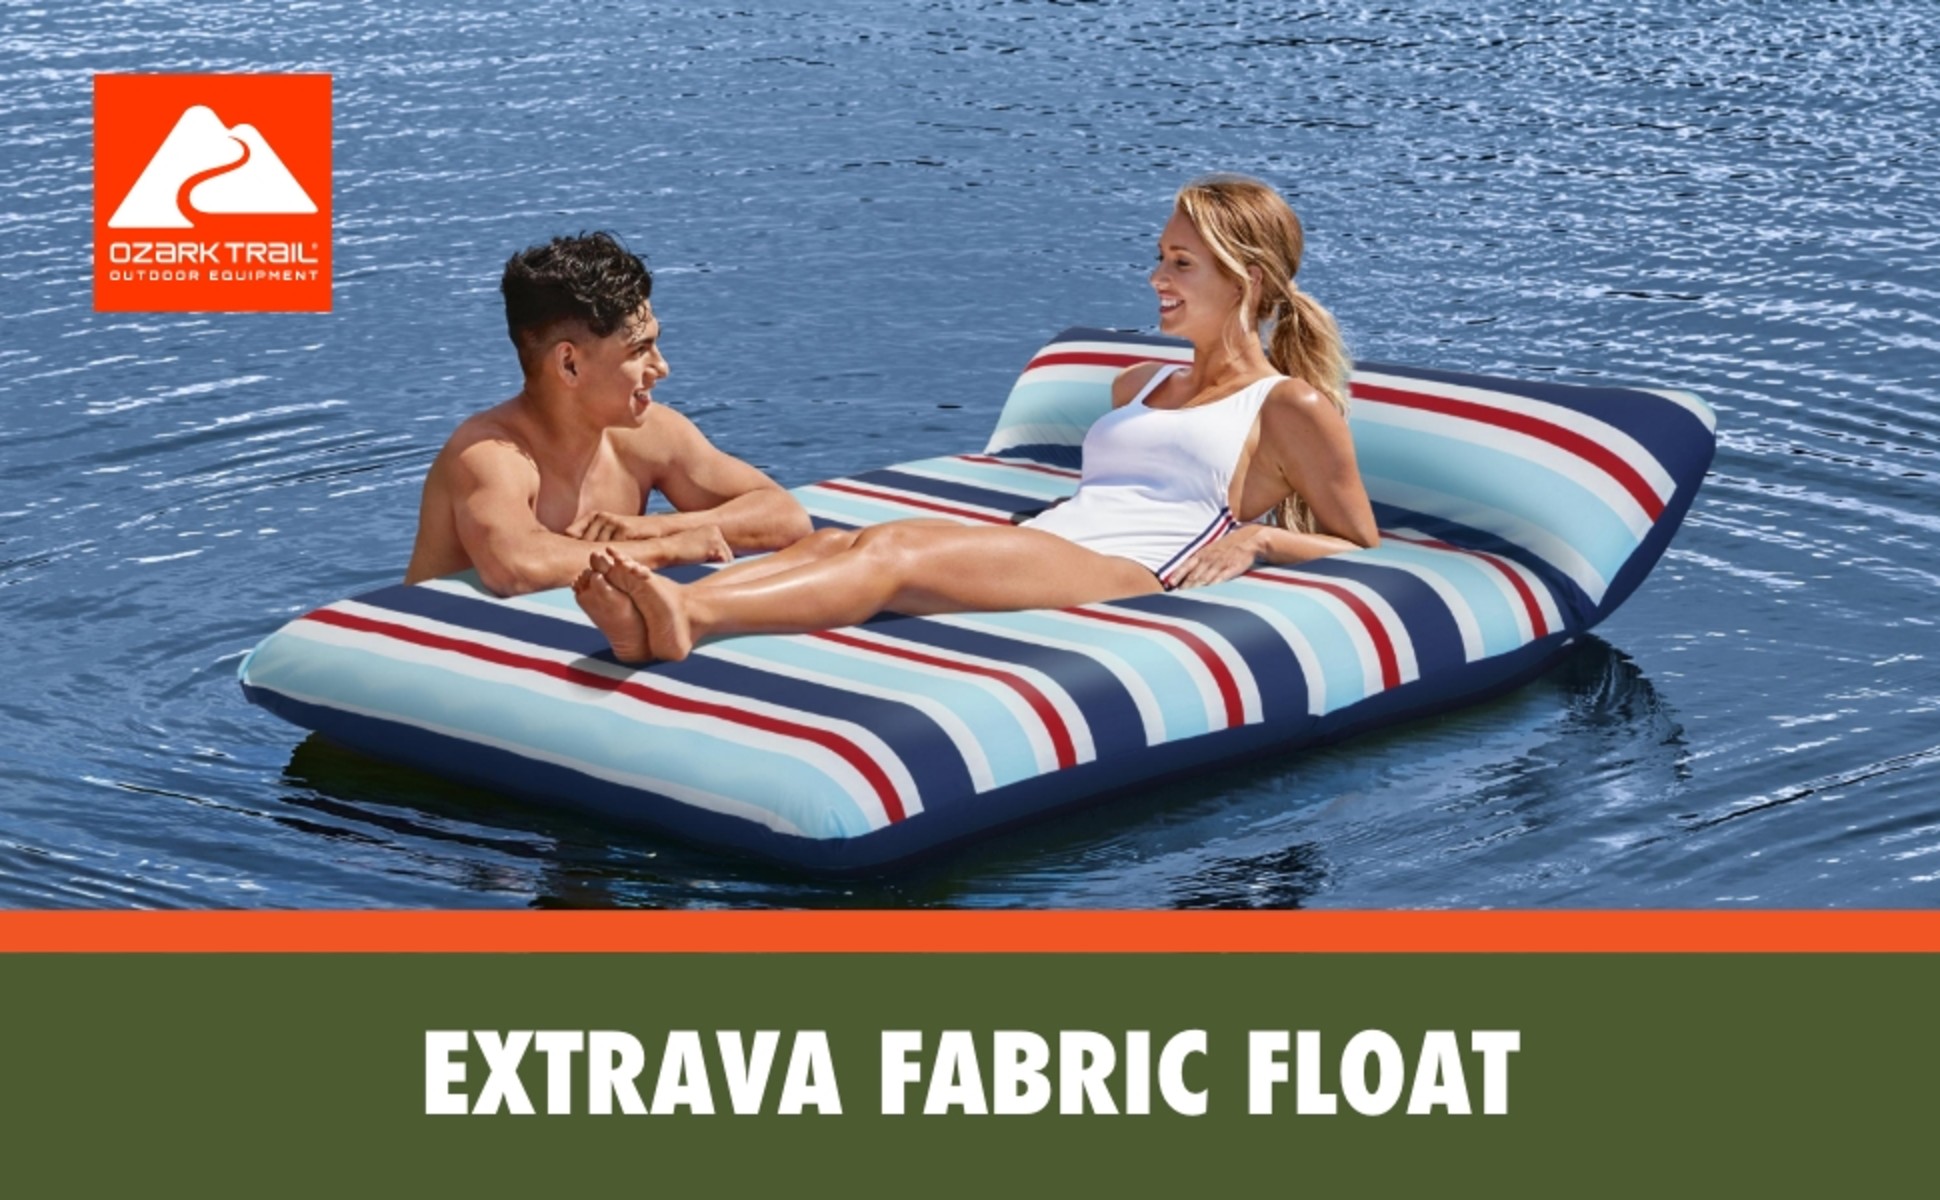 Ozark Trail Adult Unisex Extrava Fabric Float, Multicolor 